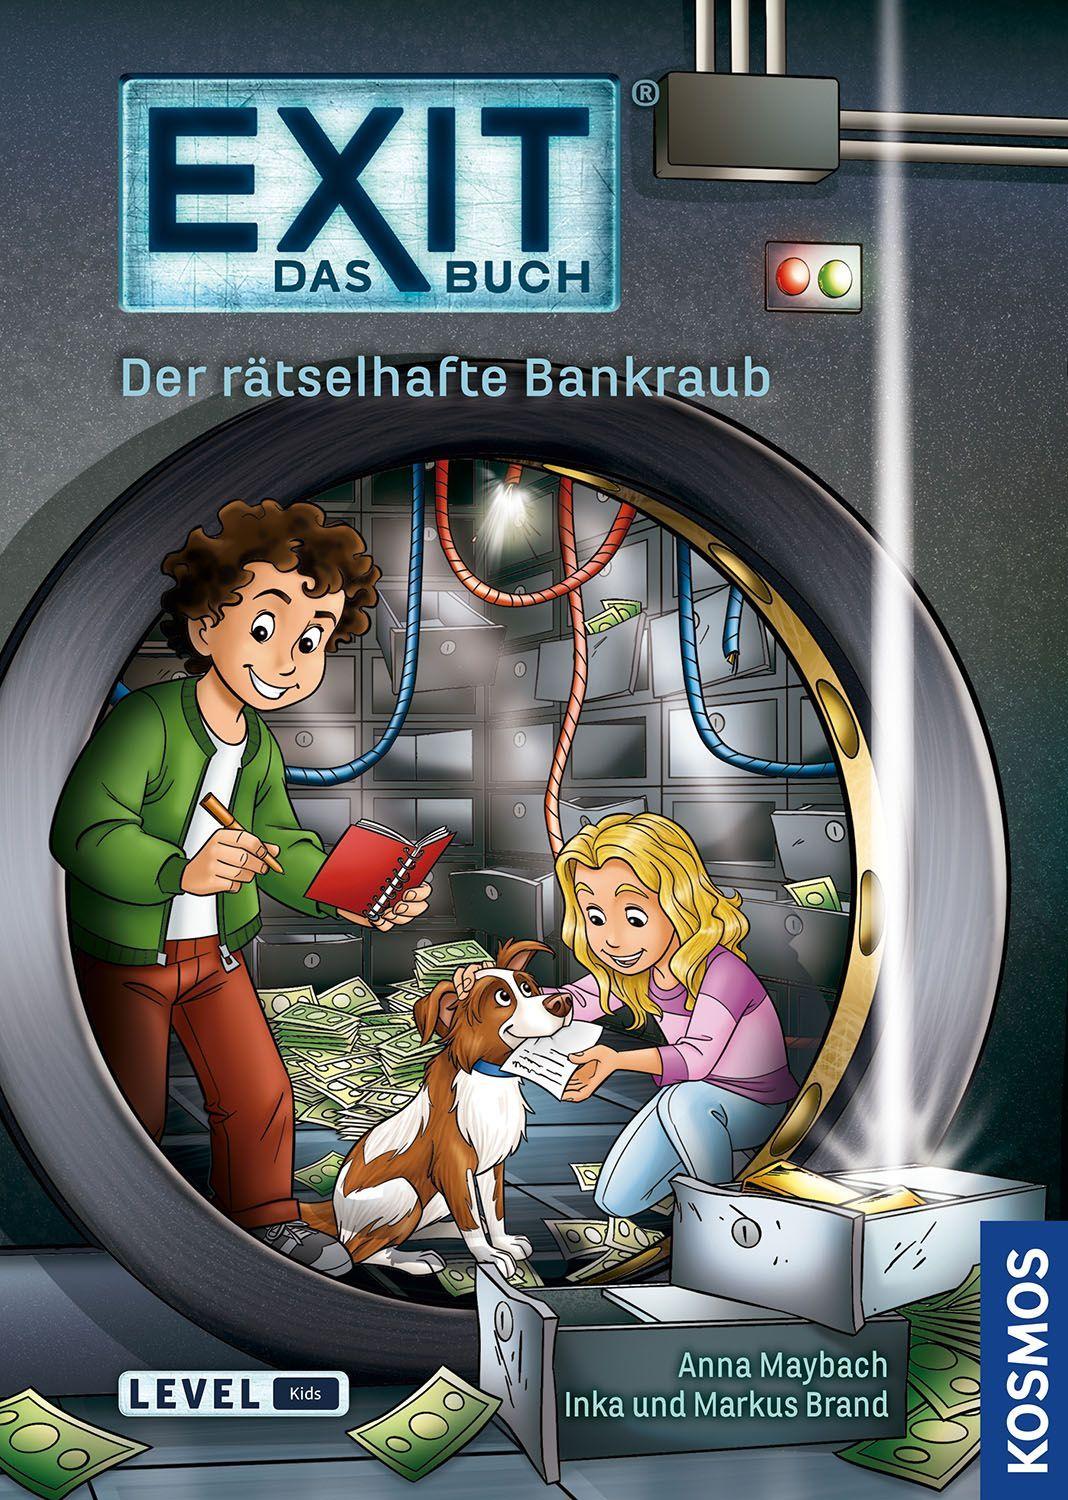 Exit Das Buch - Der rätselhafte Bankraub (Kids)